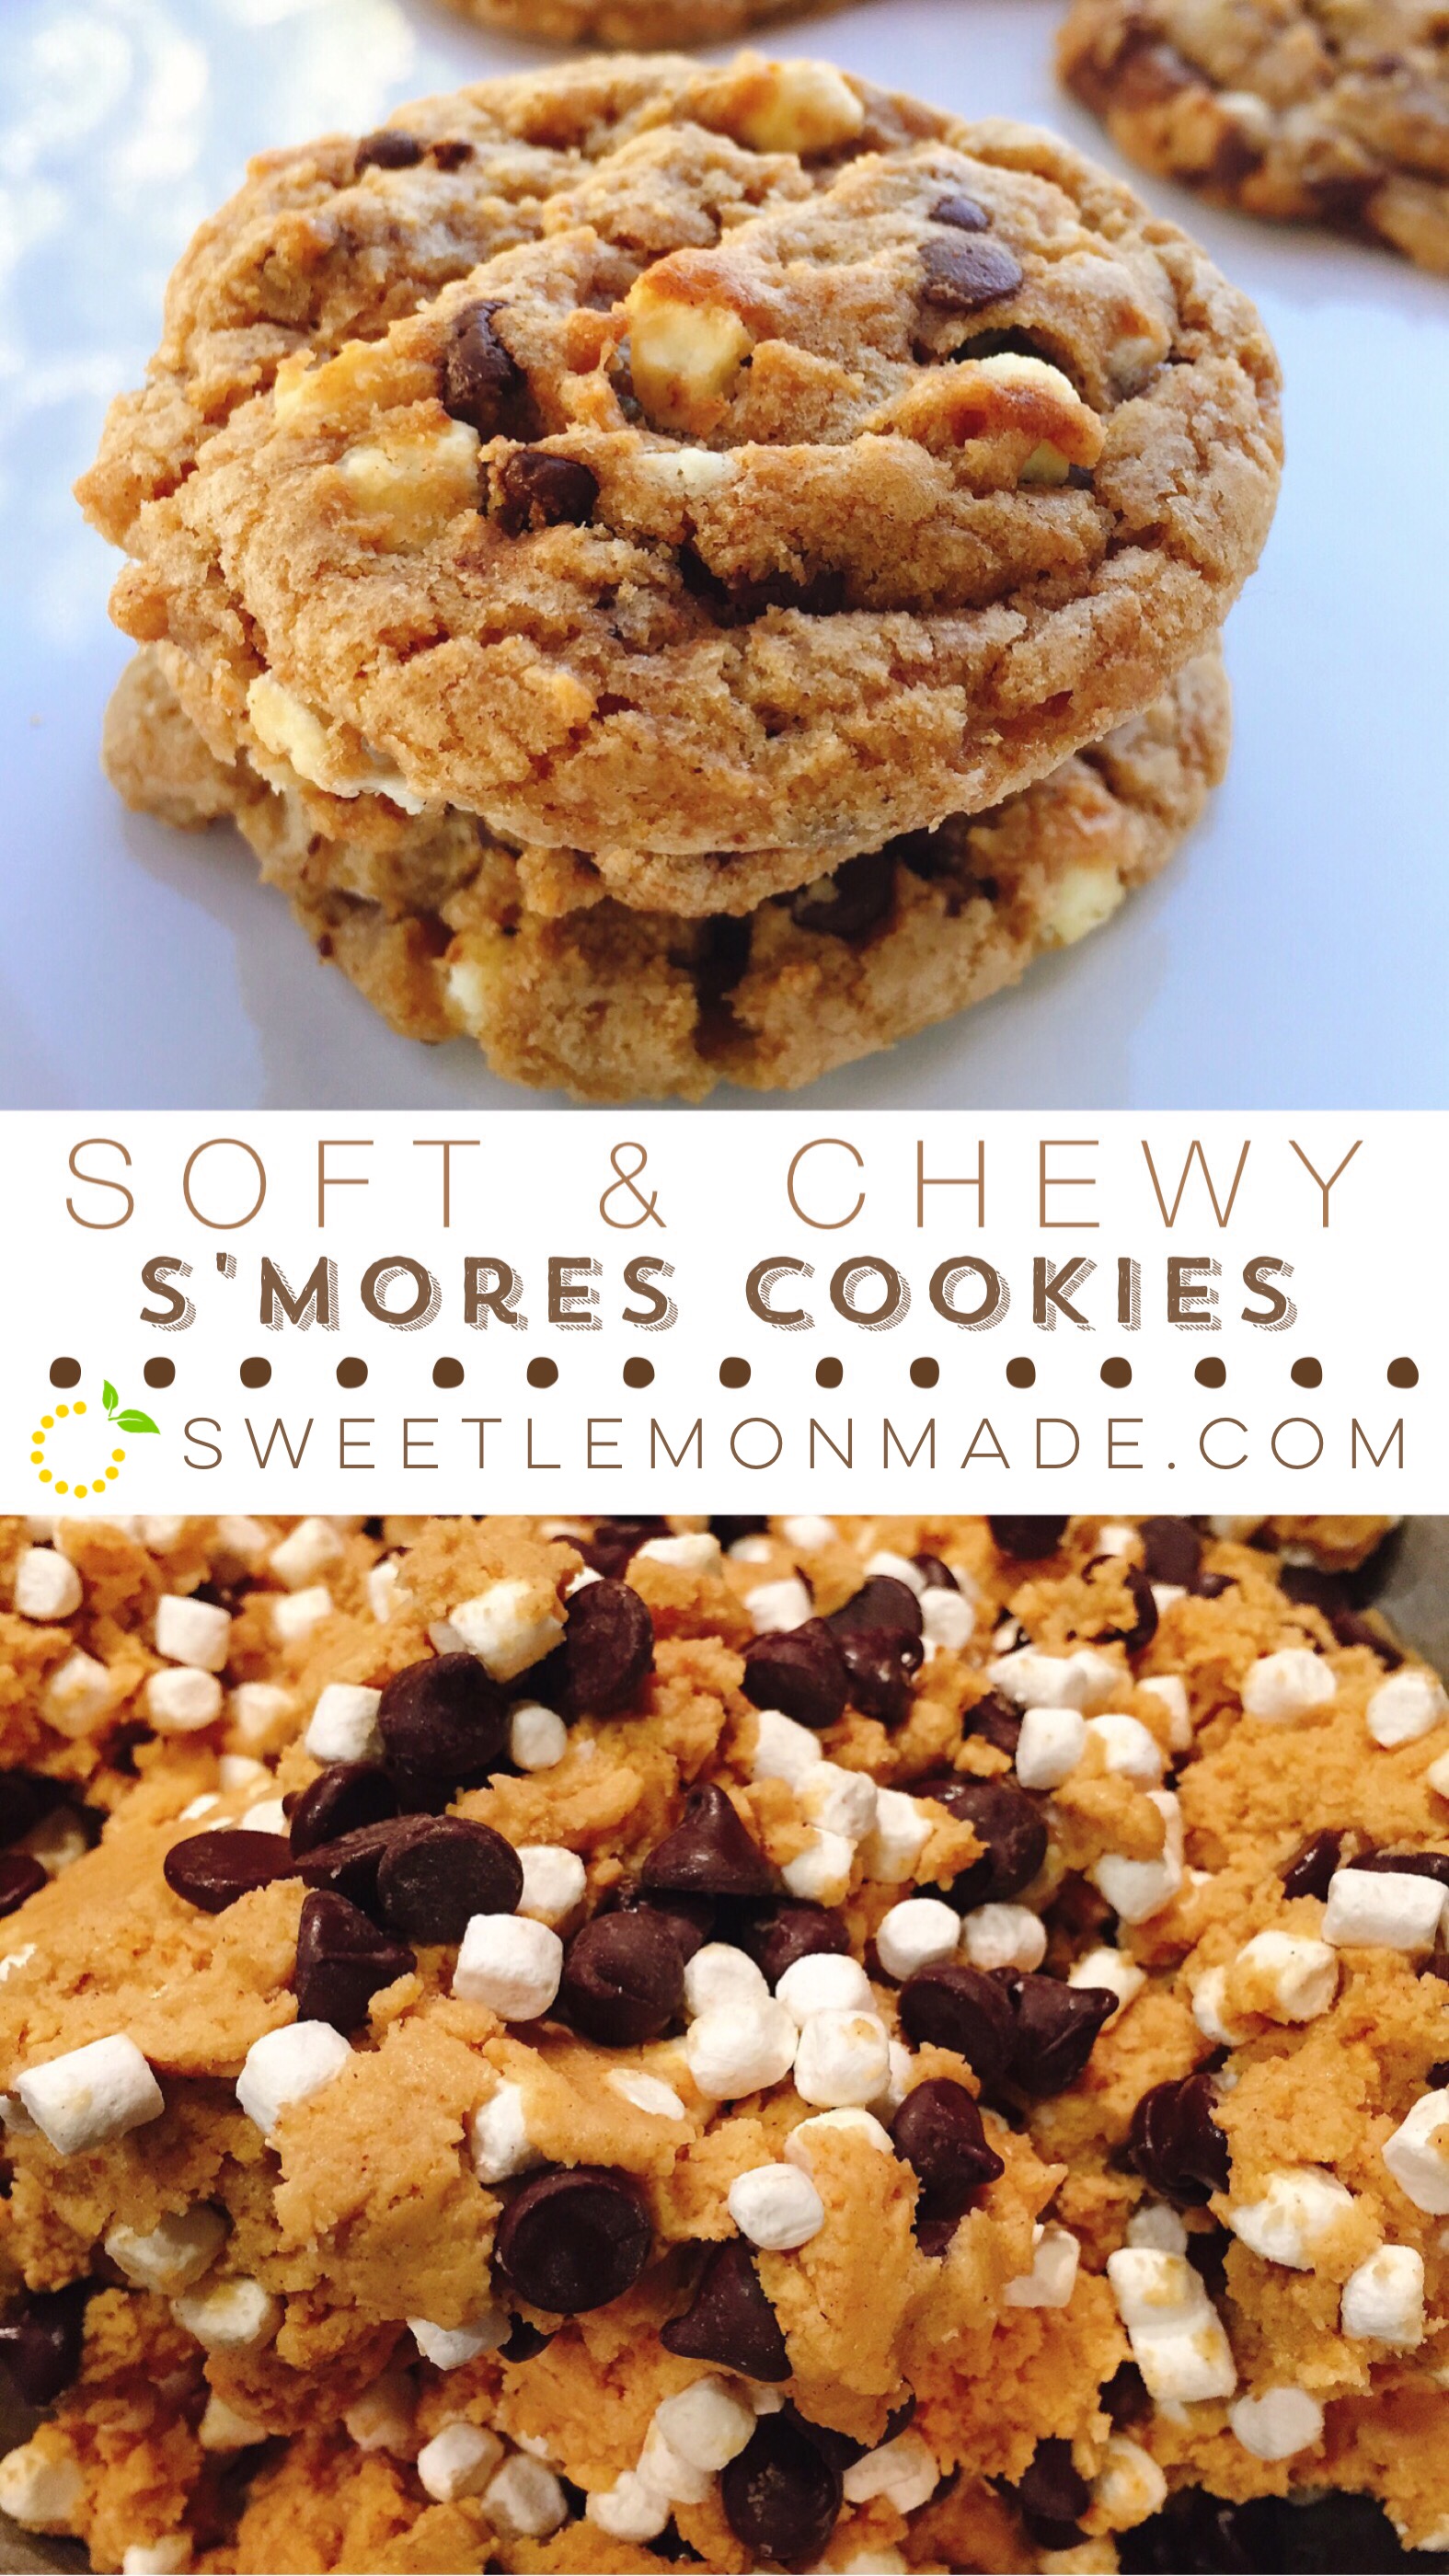 S'mores Cookie Recipes sweetlemonmade.com